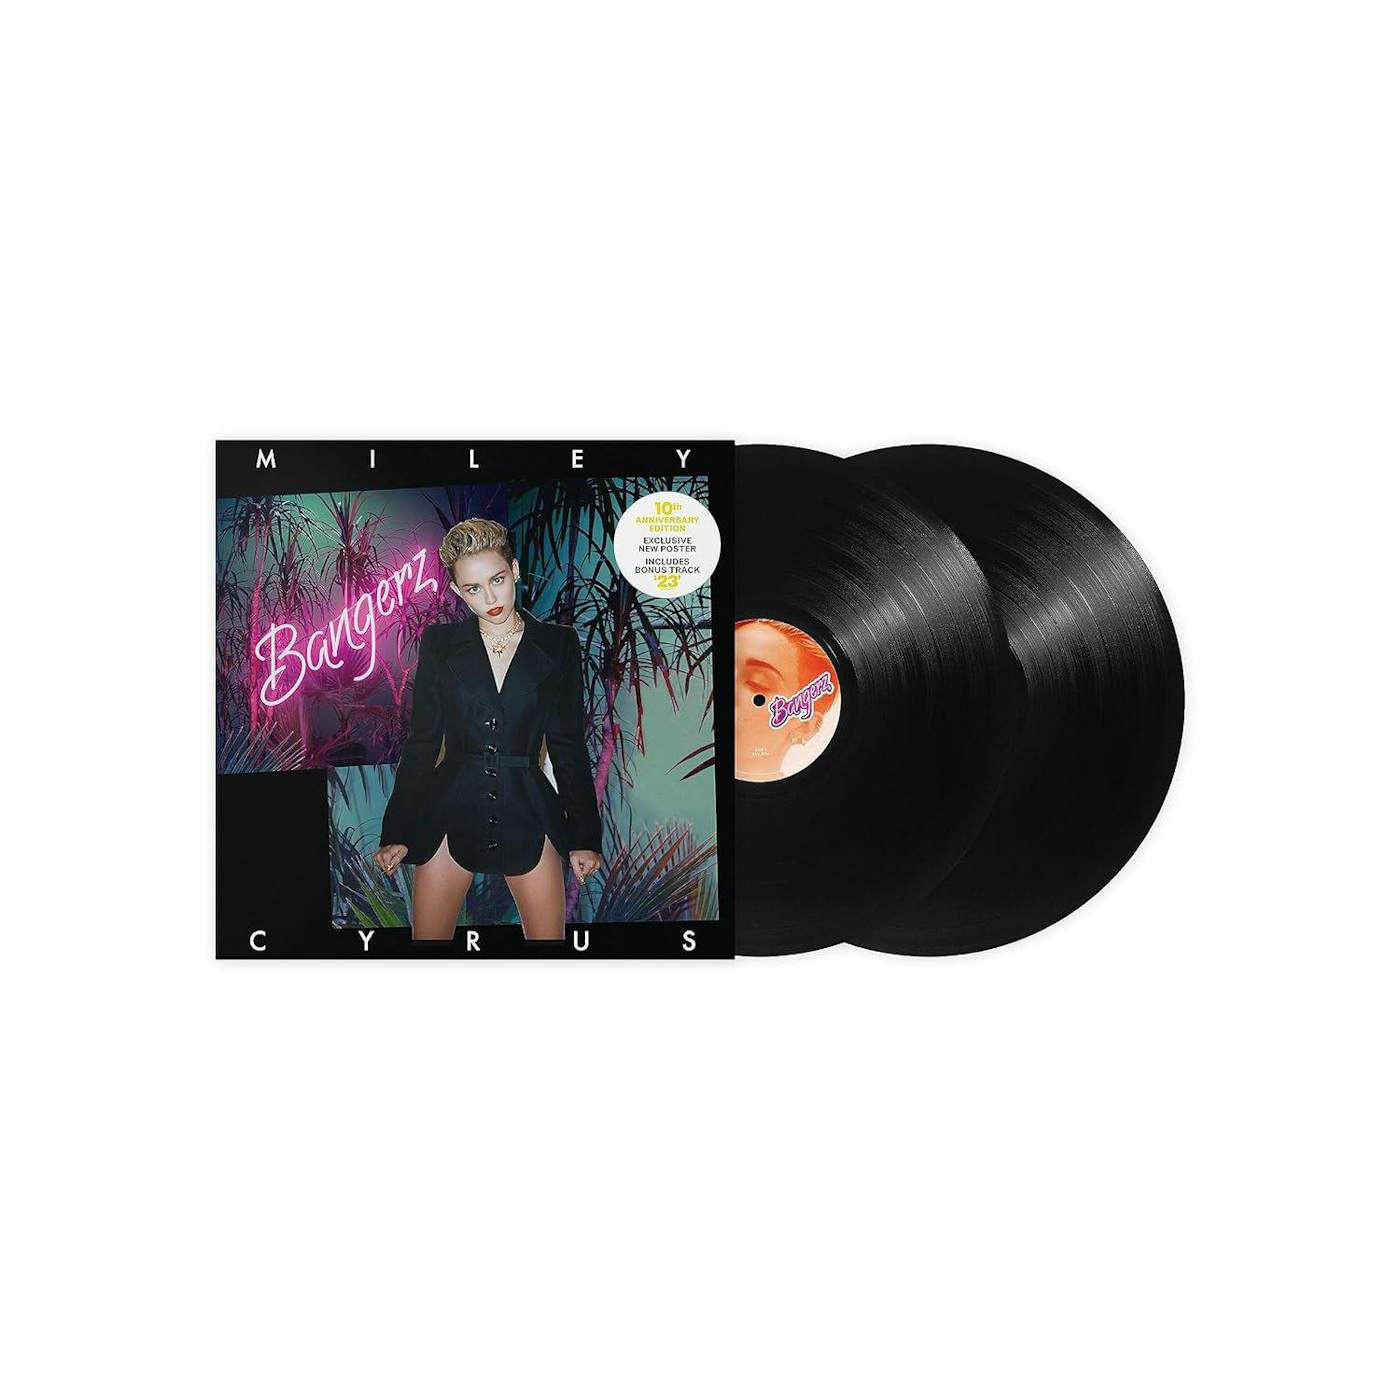 Joanne Deluxe Edition Vinyl 2LP